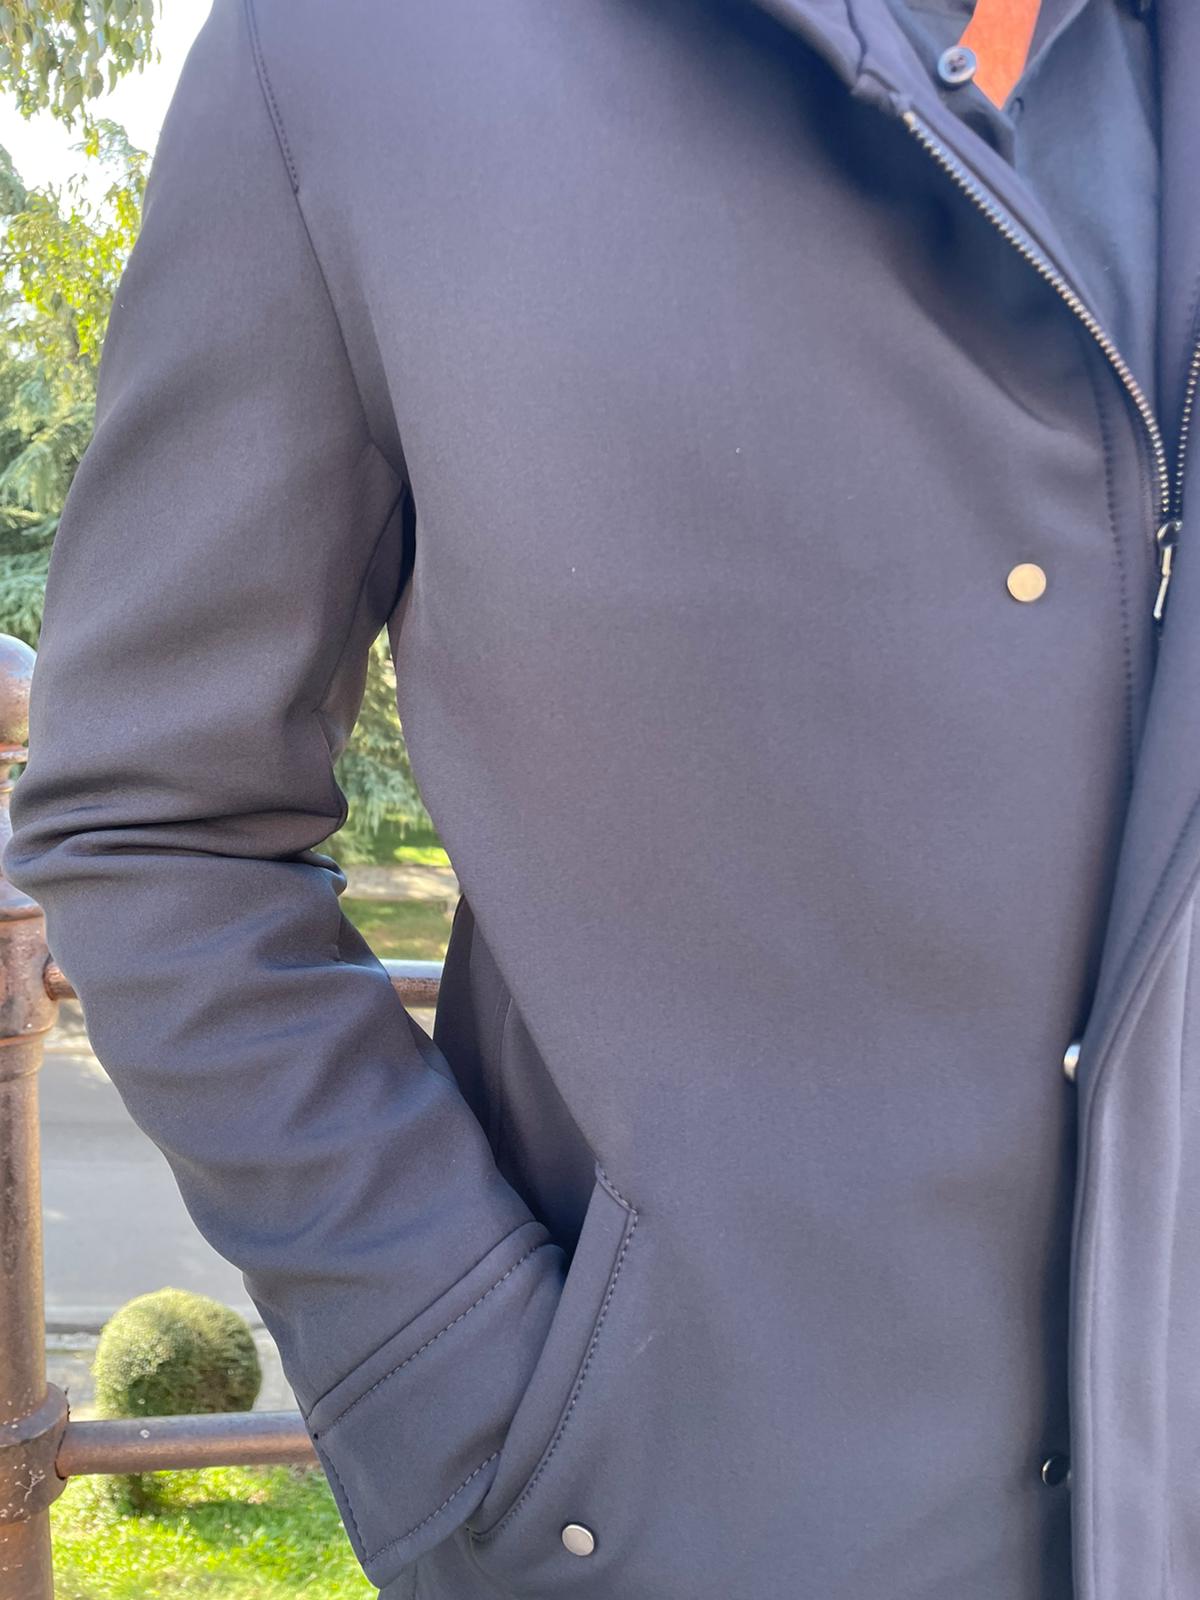 Giaccone cappotto S17 Milano mod Urali lungo con zip